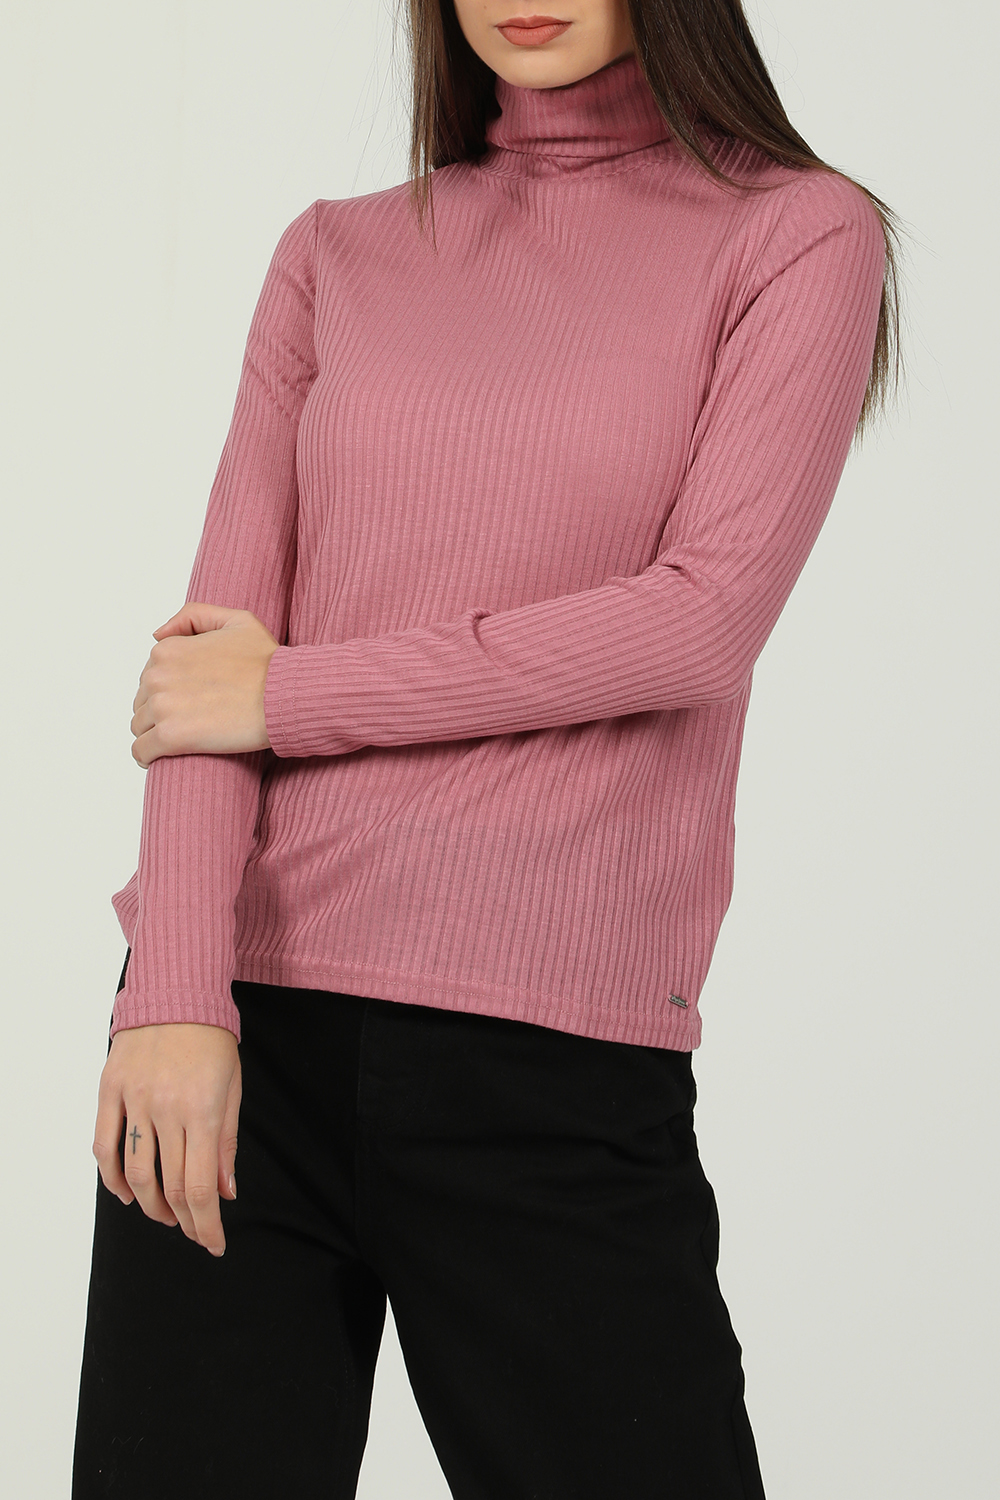 Γυναικεία/Ρούχα/Μπλούζες/Μακρυμάνικες PEPE JEANS - Γυναικεία μακρυμάνικη μπλούζα PEPE JEANS DEBORAH ροζ